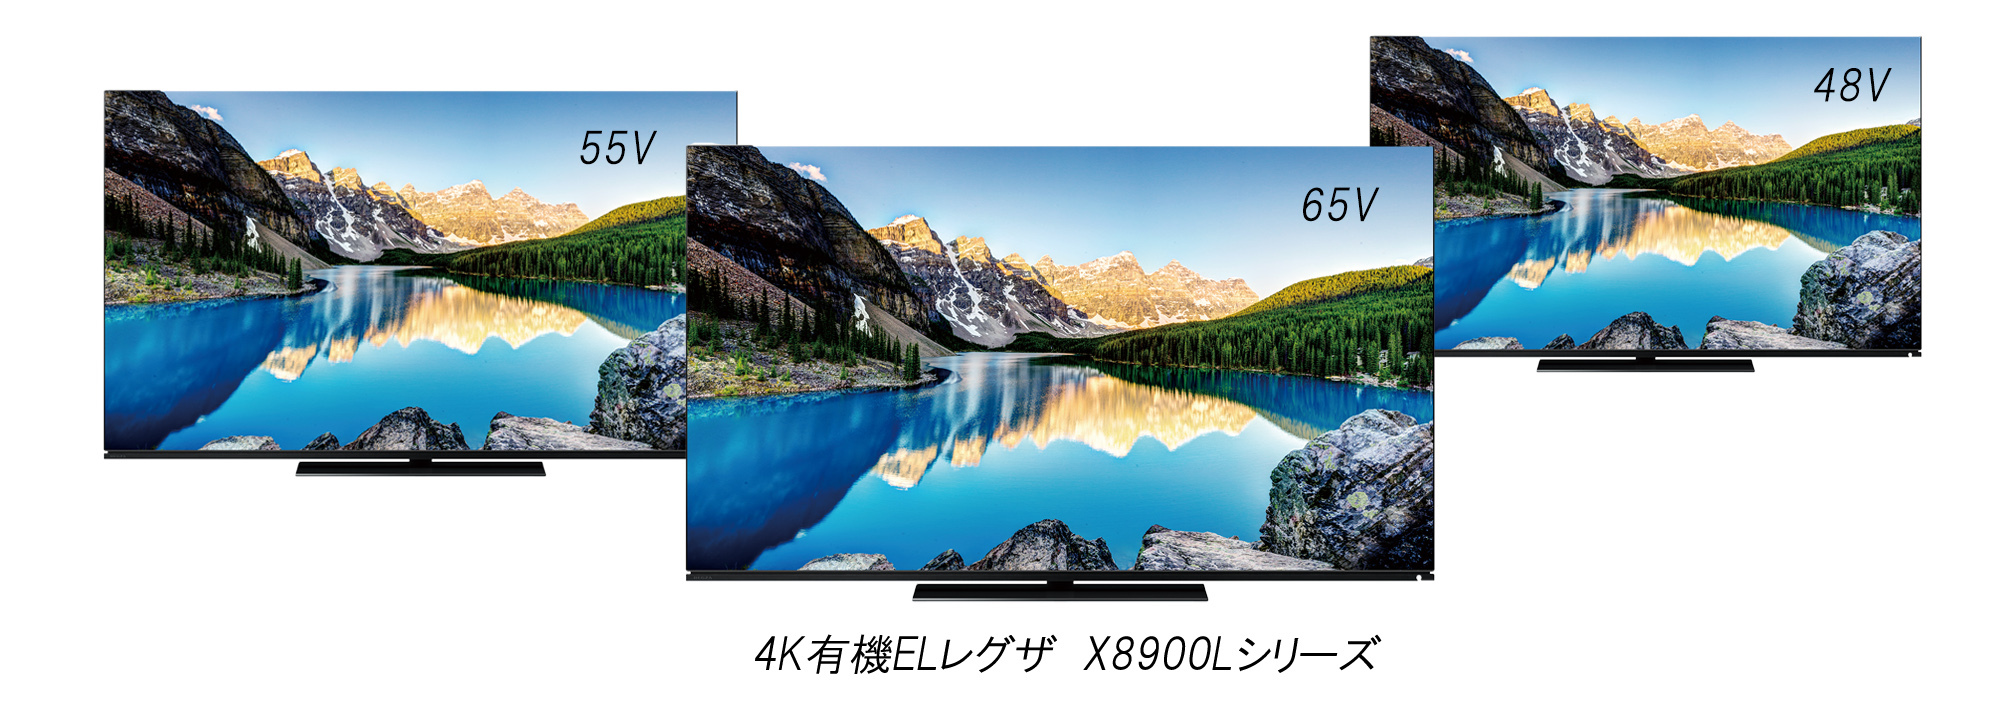 「X8900Lシリーズ」